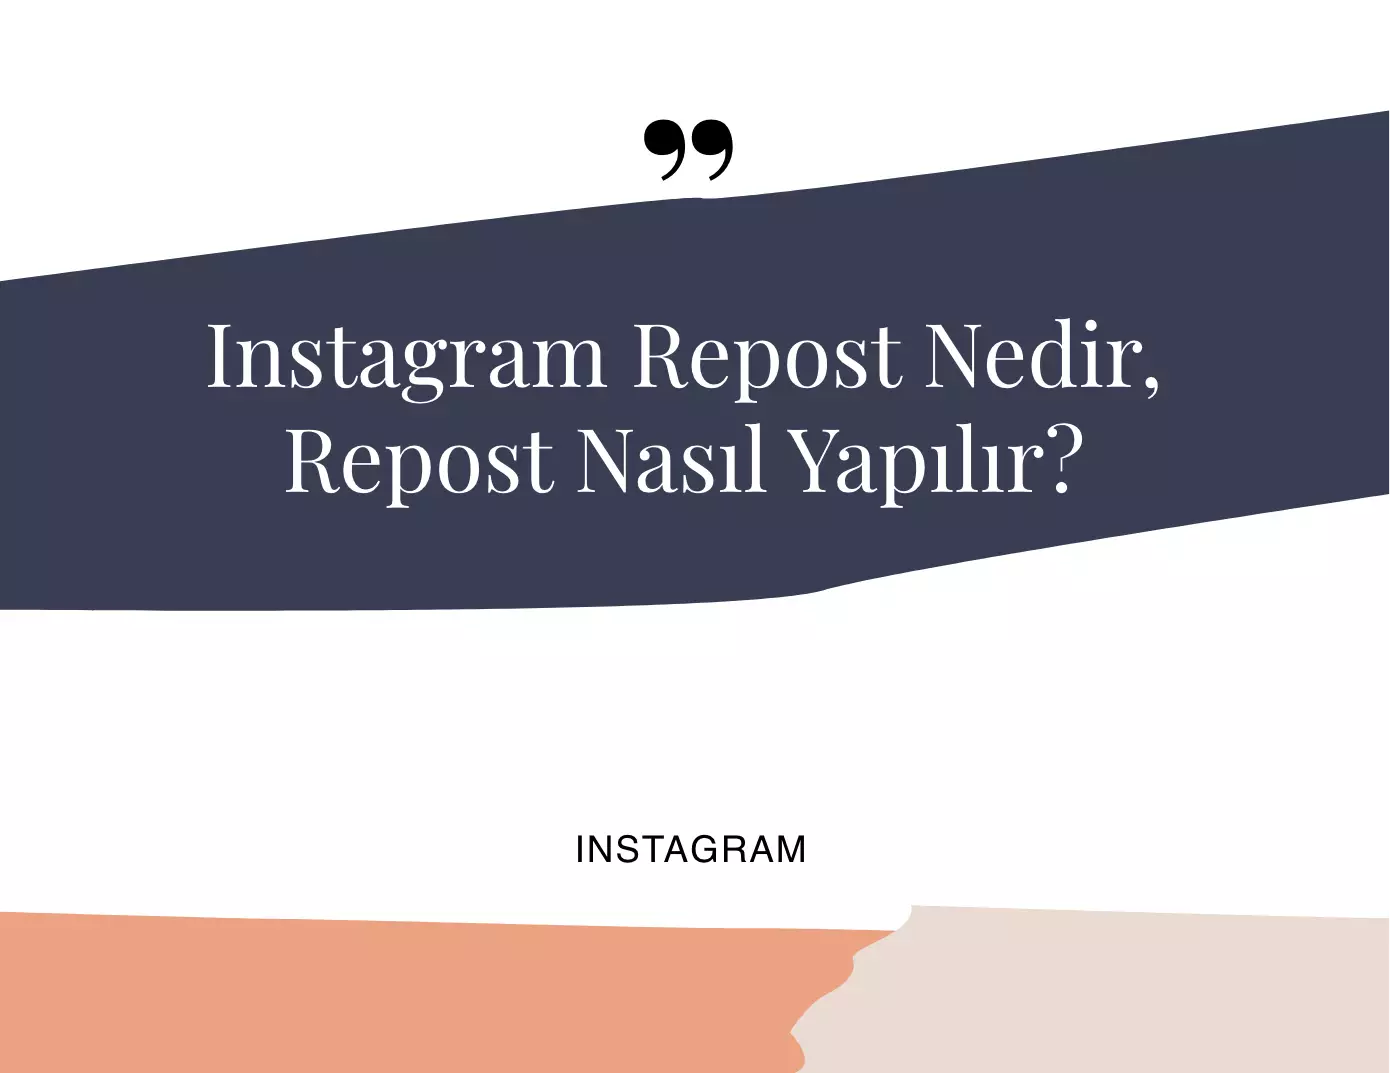 Instagram Repost Nedir, Repost Nasıl Yapılır?